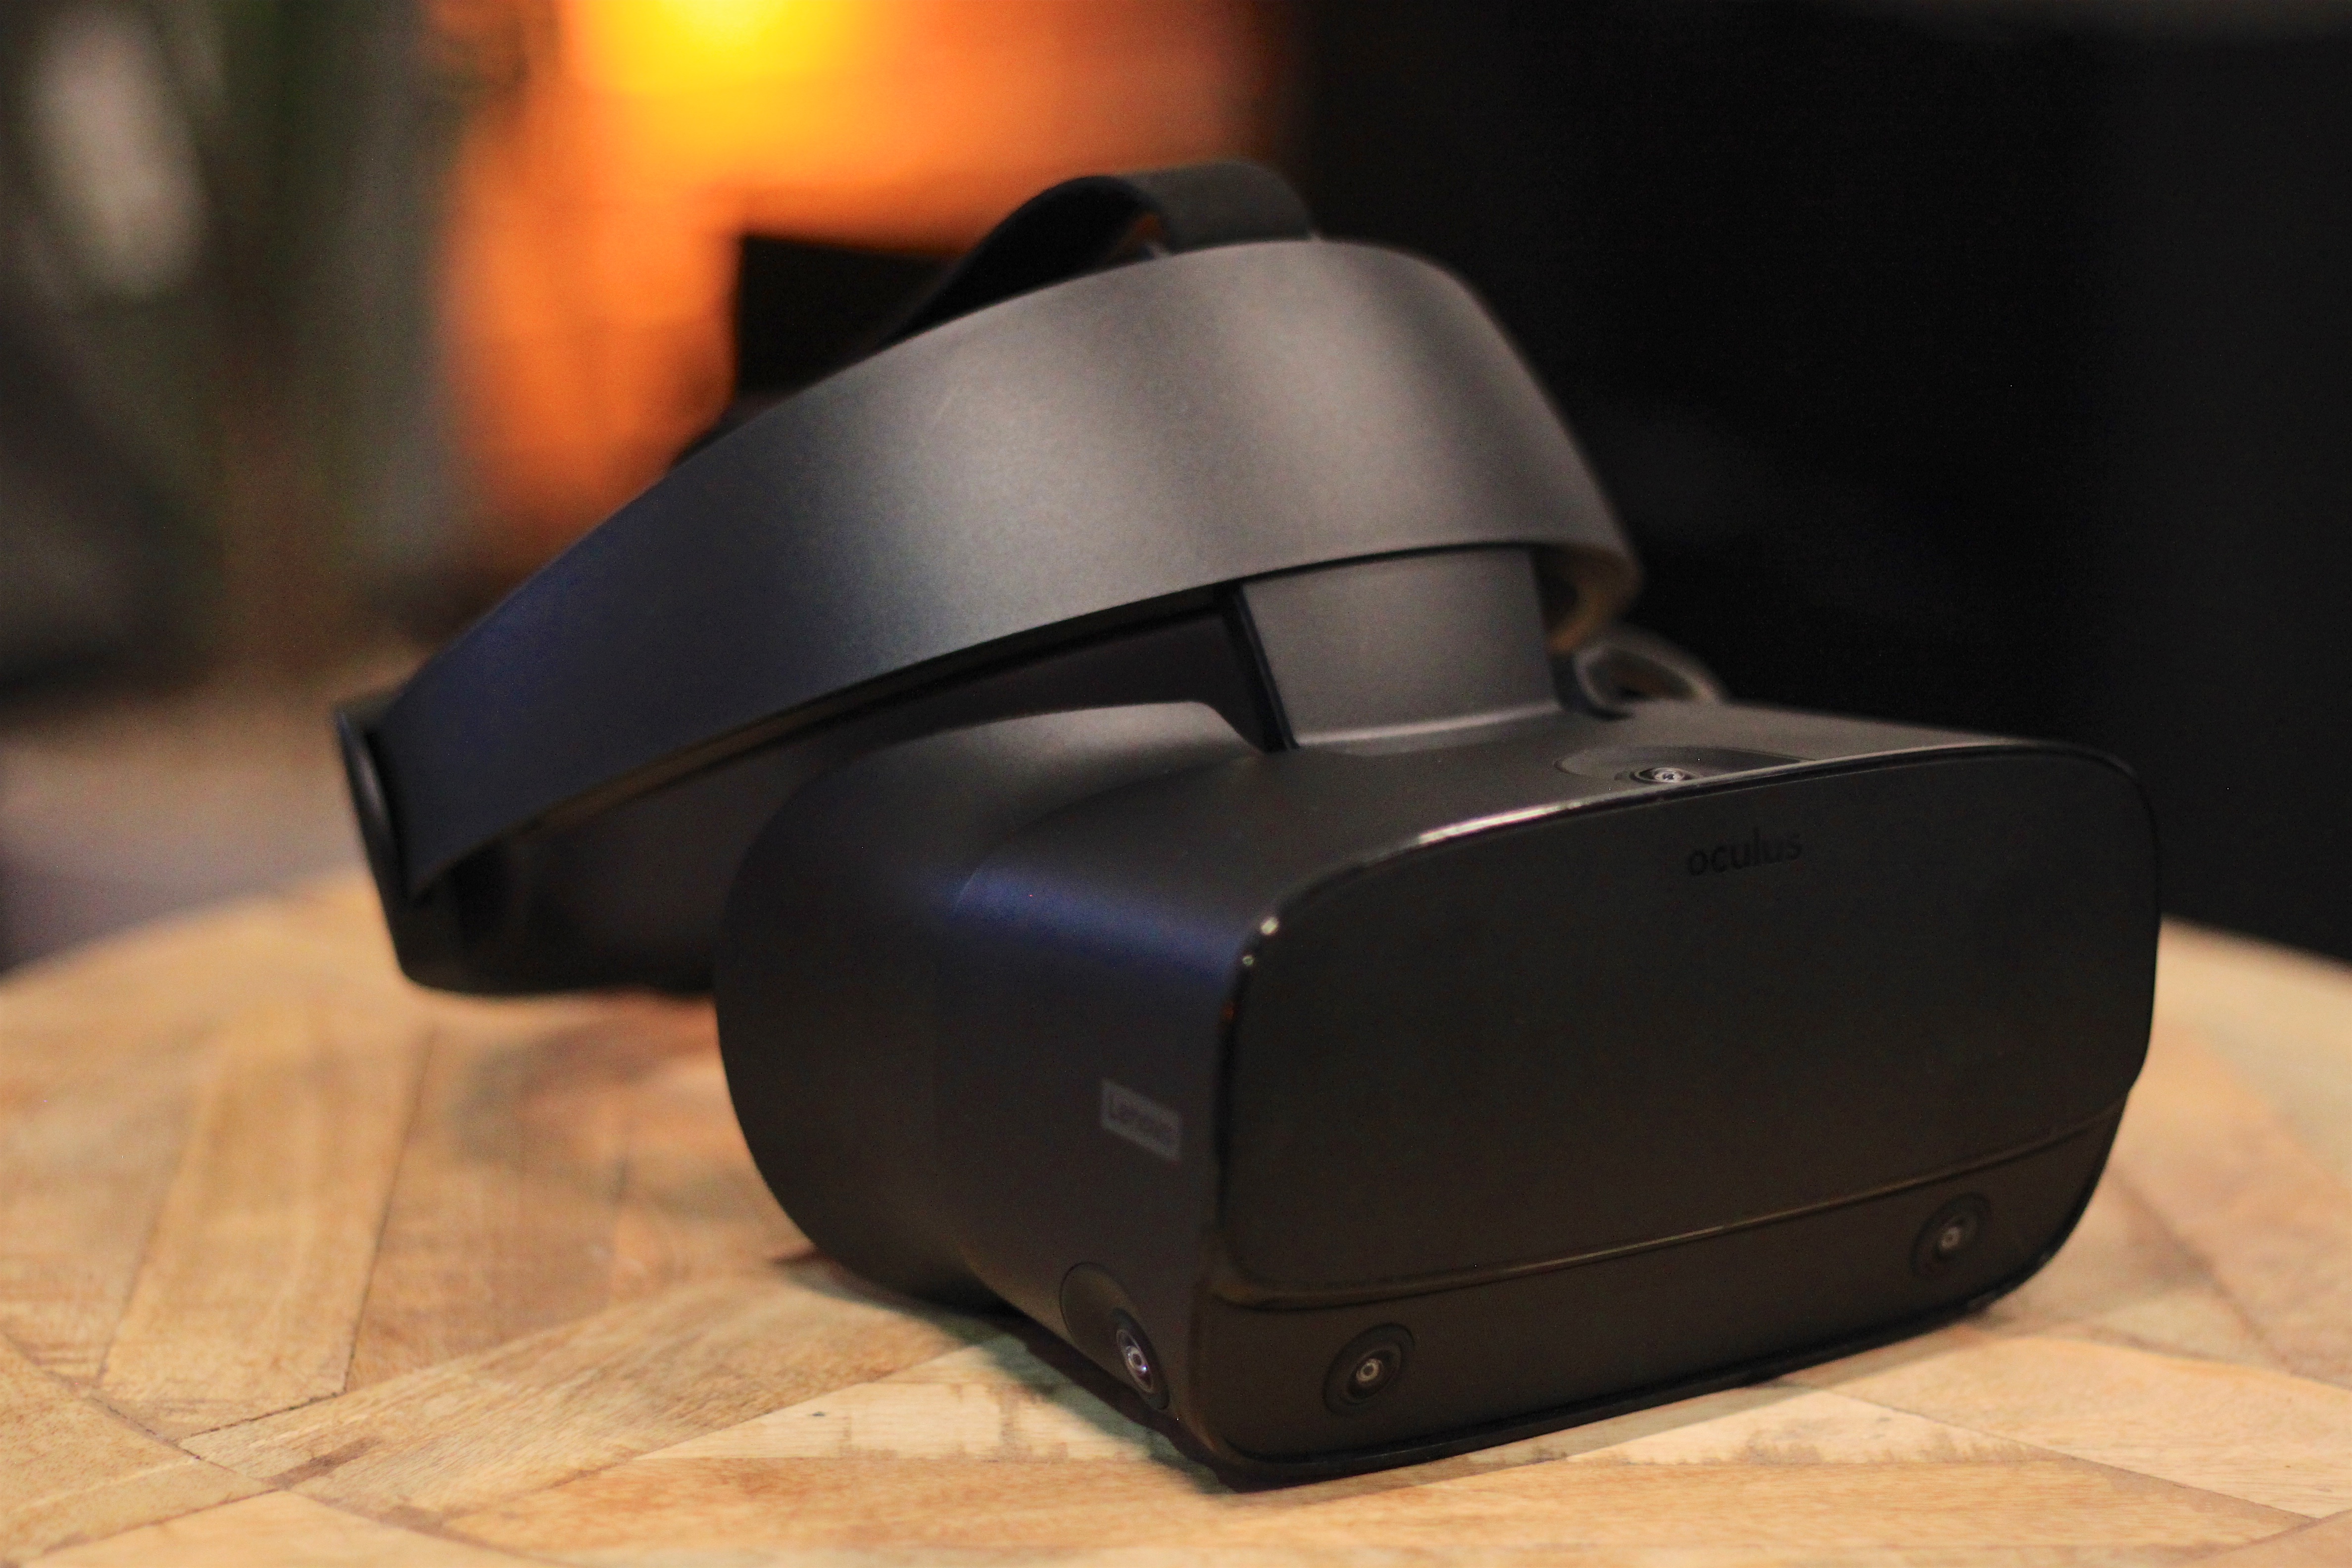 eenheid belangrijk Macadam Hands-on with the new $399 Oculus Rift S: More pixels, zero webcams, better  fit | Ars Technica